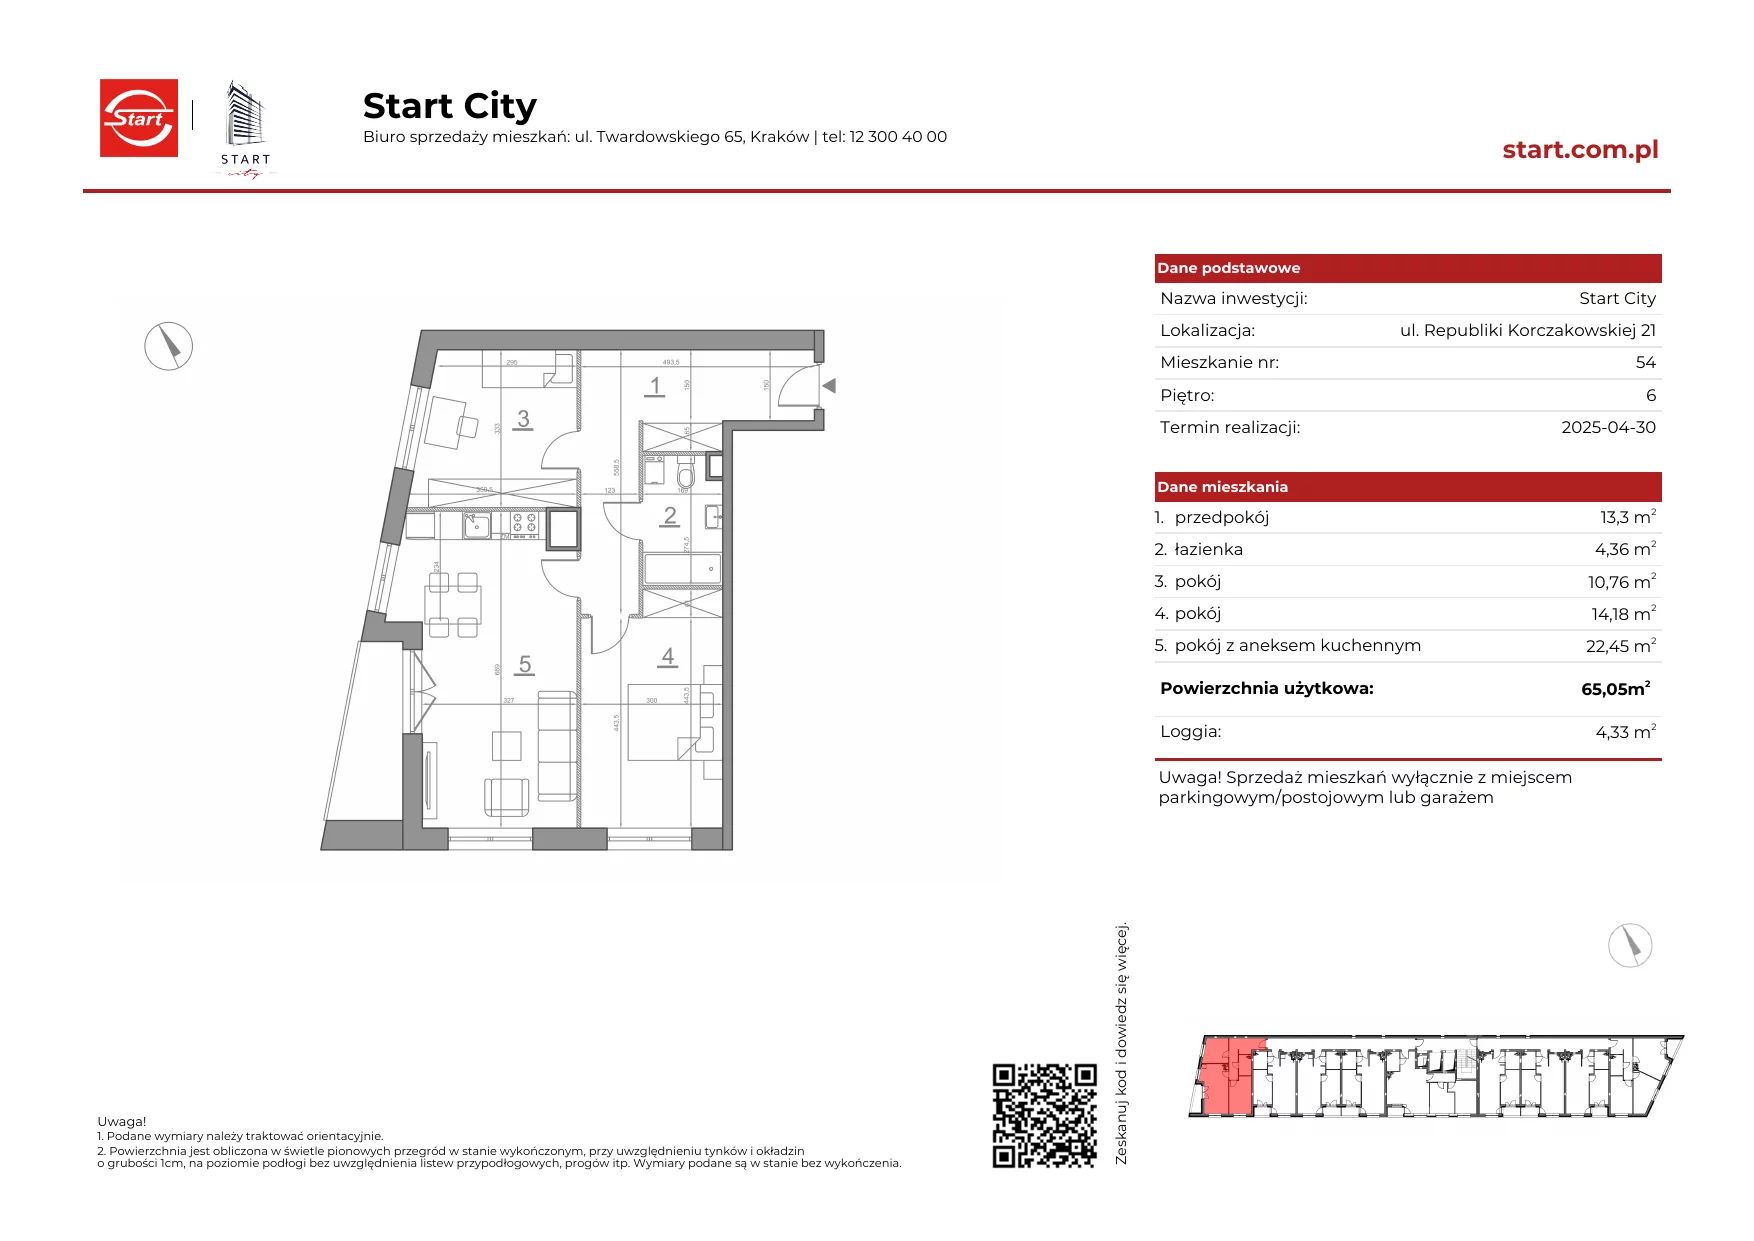 Mieszkanie 65,05 m², piętro 6, oferta nr 21/54, Start City, Kraków, Bieżanów-Prokocim, ul. Republiki Korczakowskiej 21